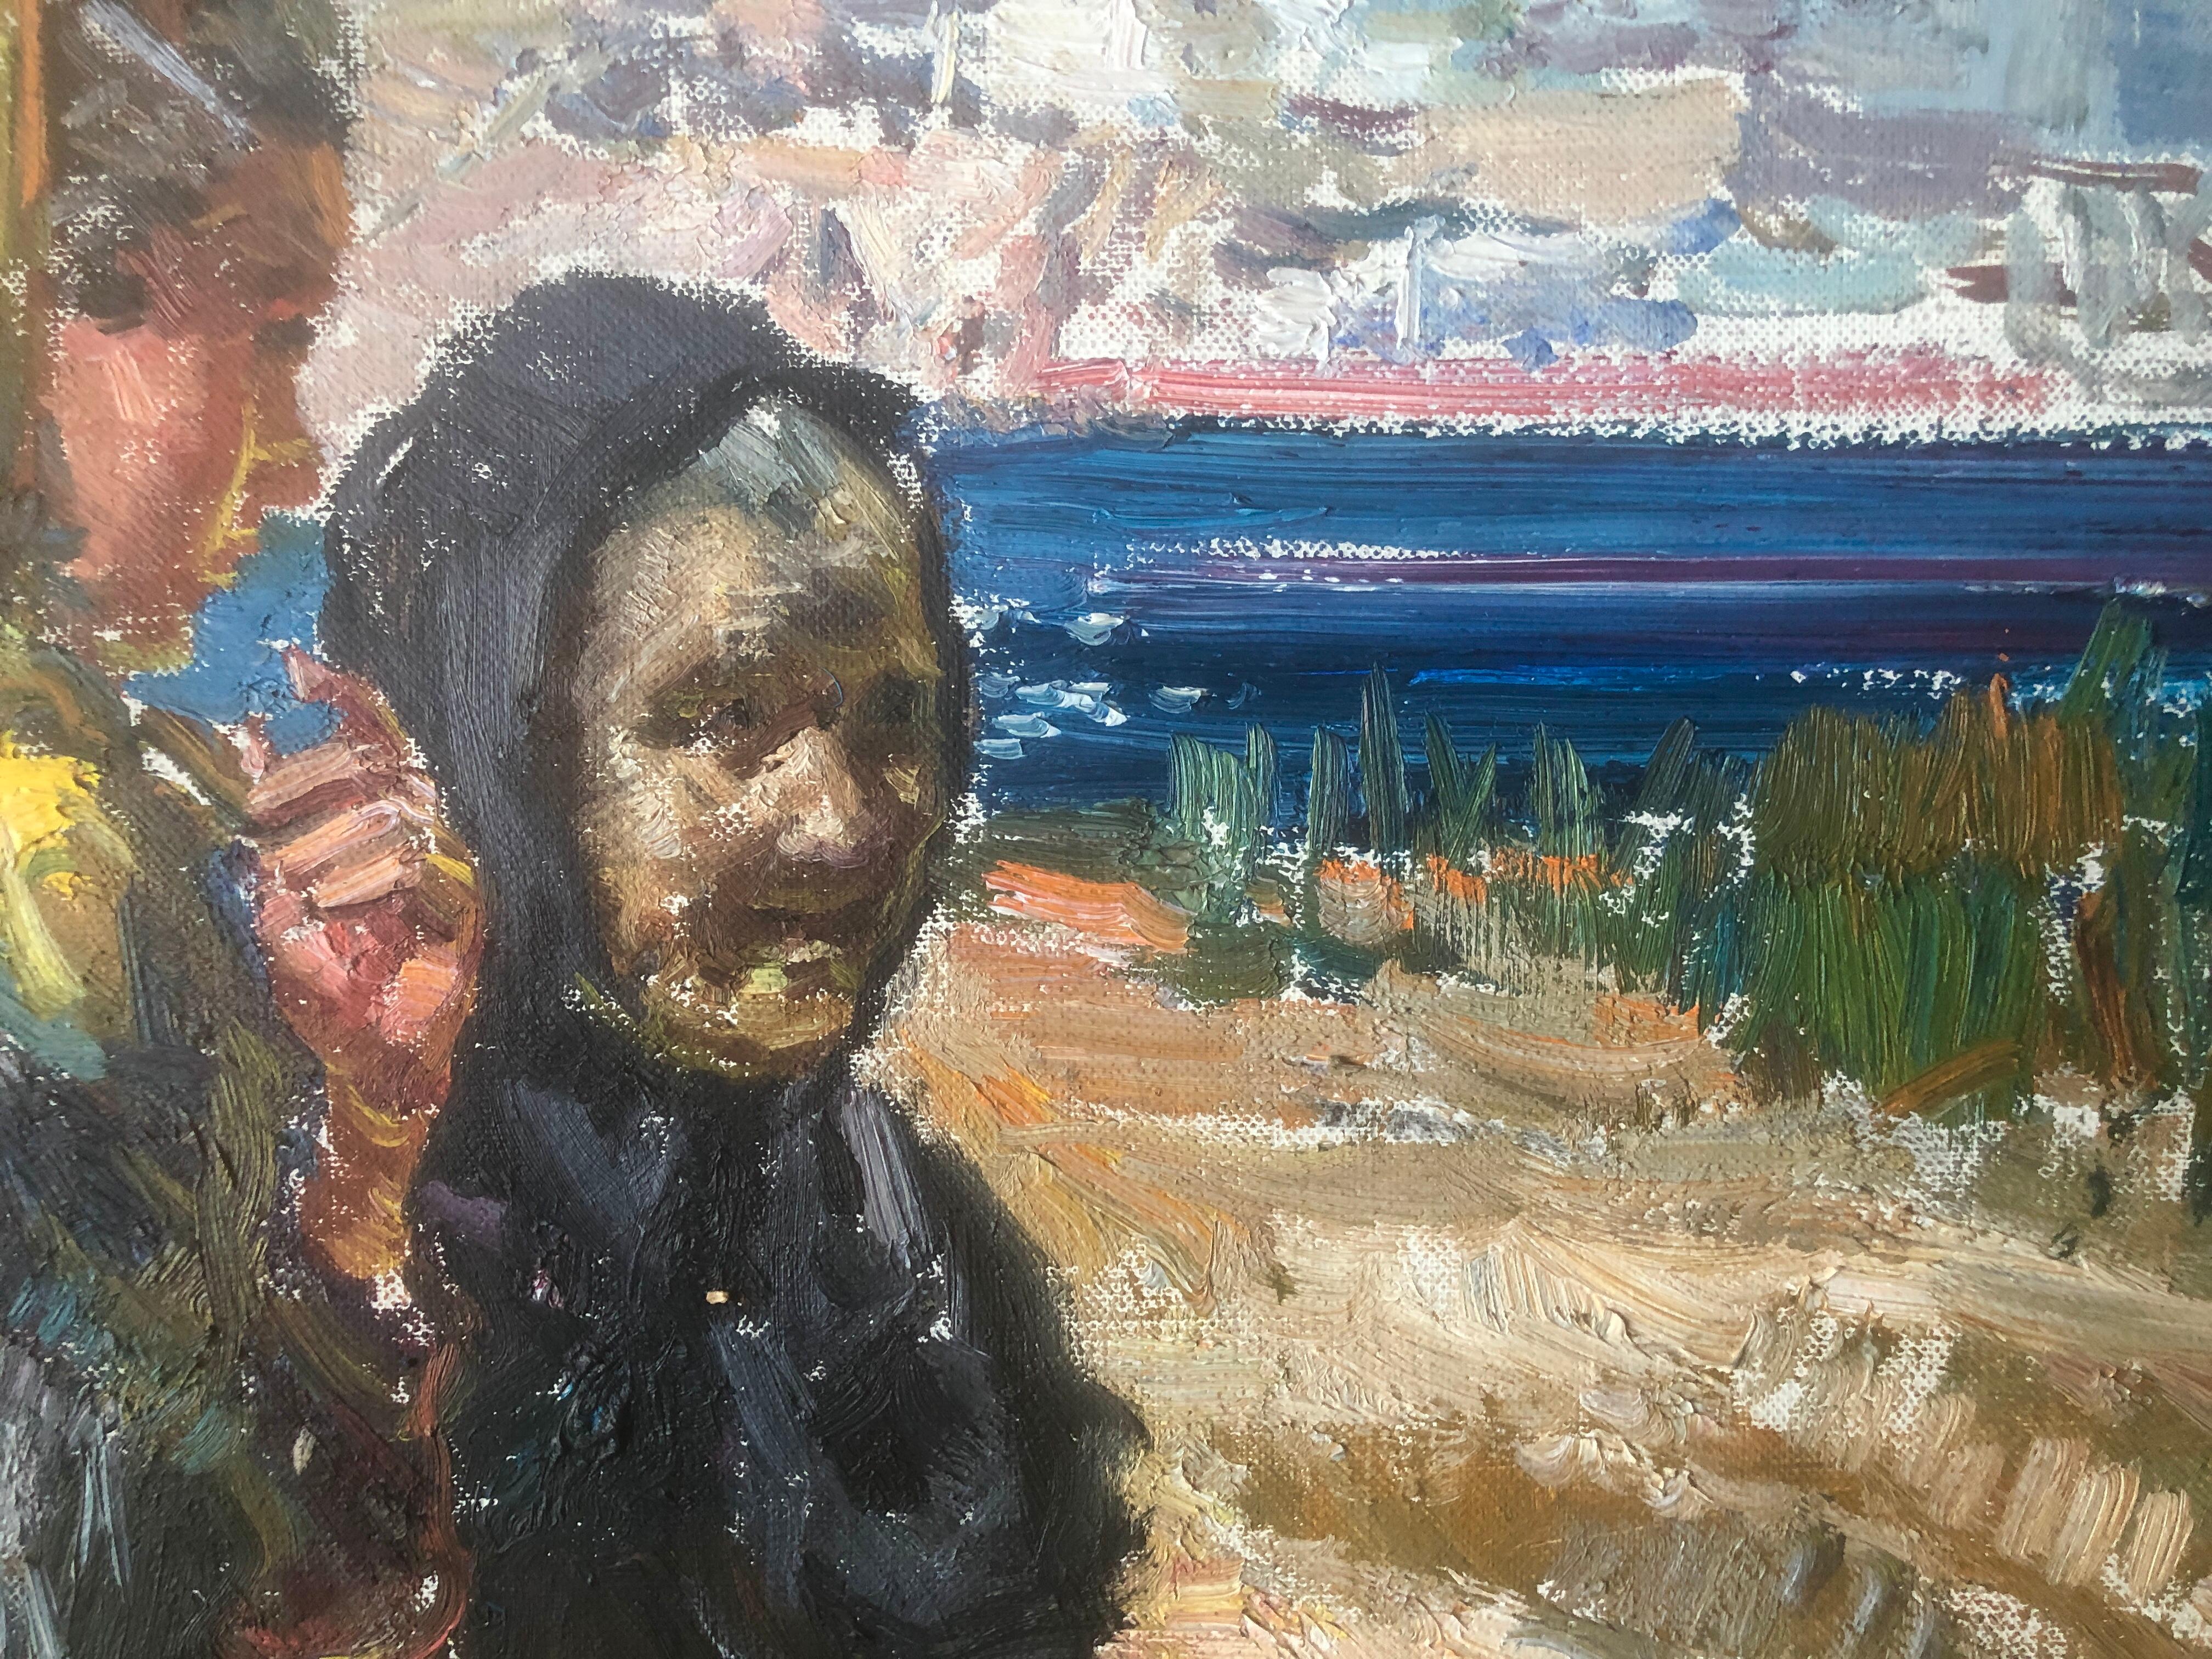 Frauen aus ibiza, Spanien, Öl auf Leinwand, Gemälde spanische Meereslandschaft, mediterrane Meereslandschaft, Öl (Post-Impressionismus), Painting, von Ignacio Gil Sala